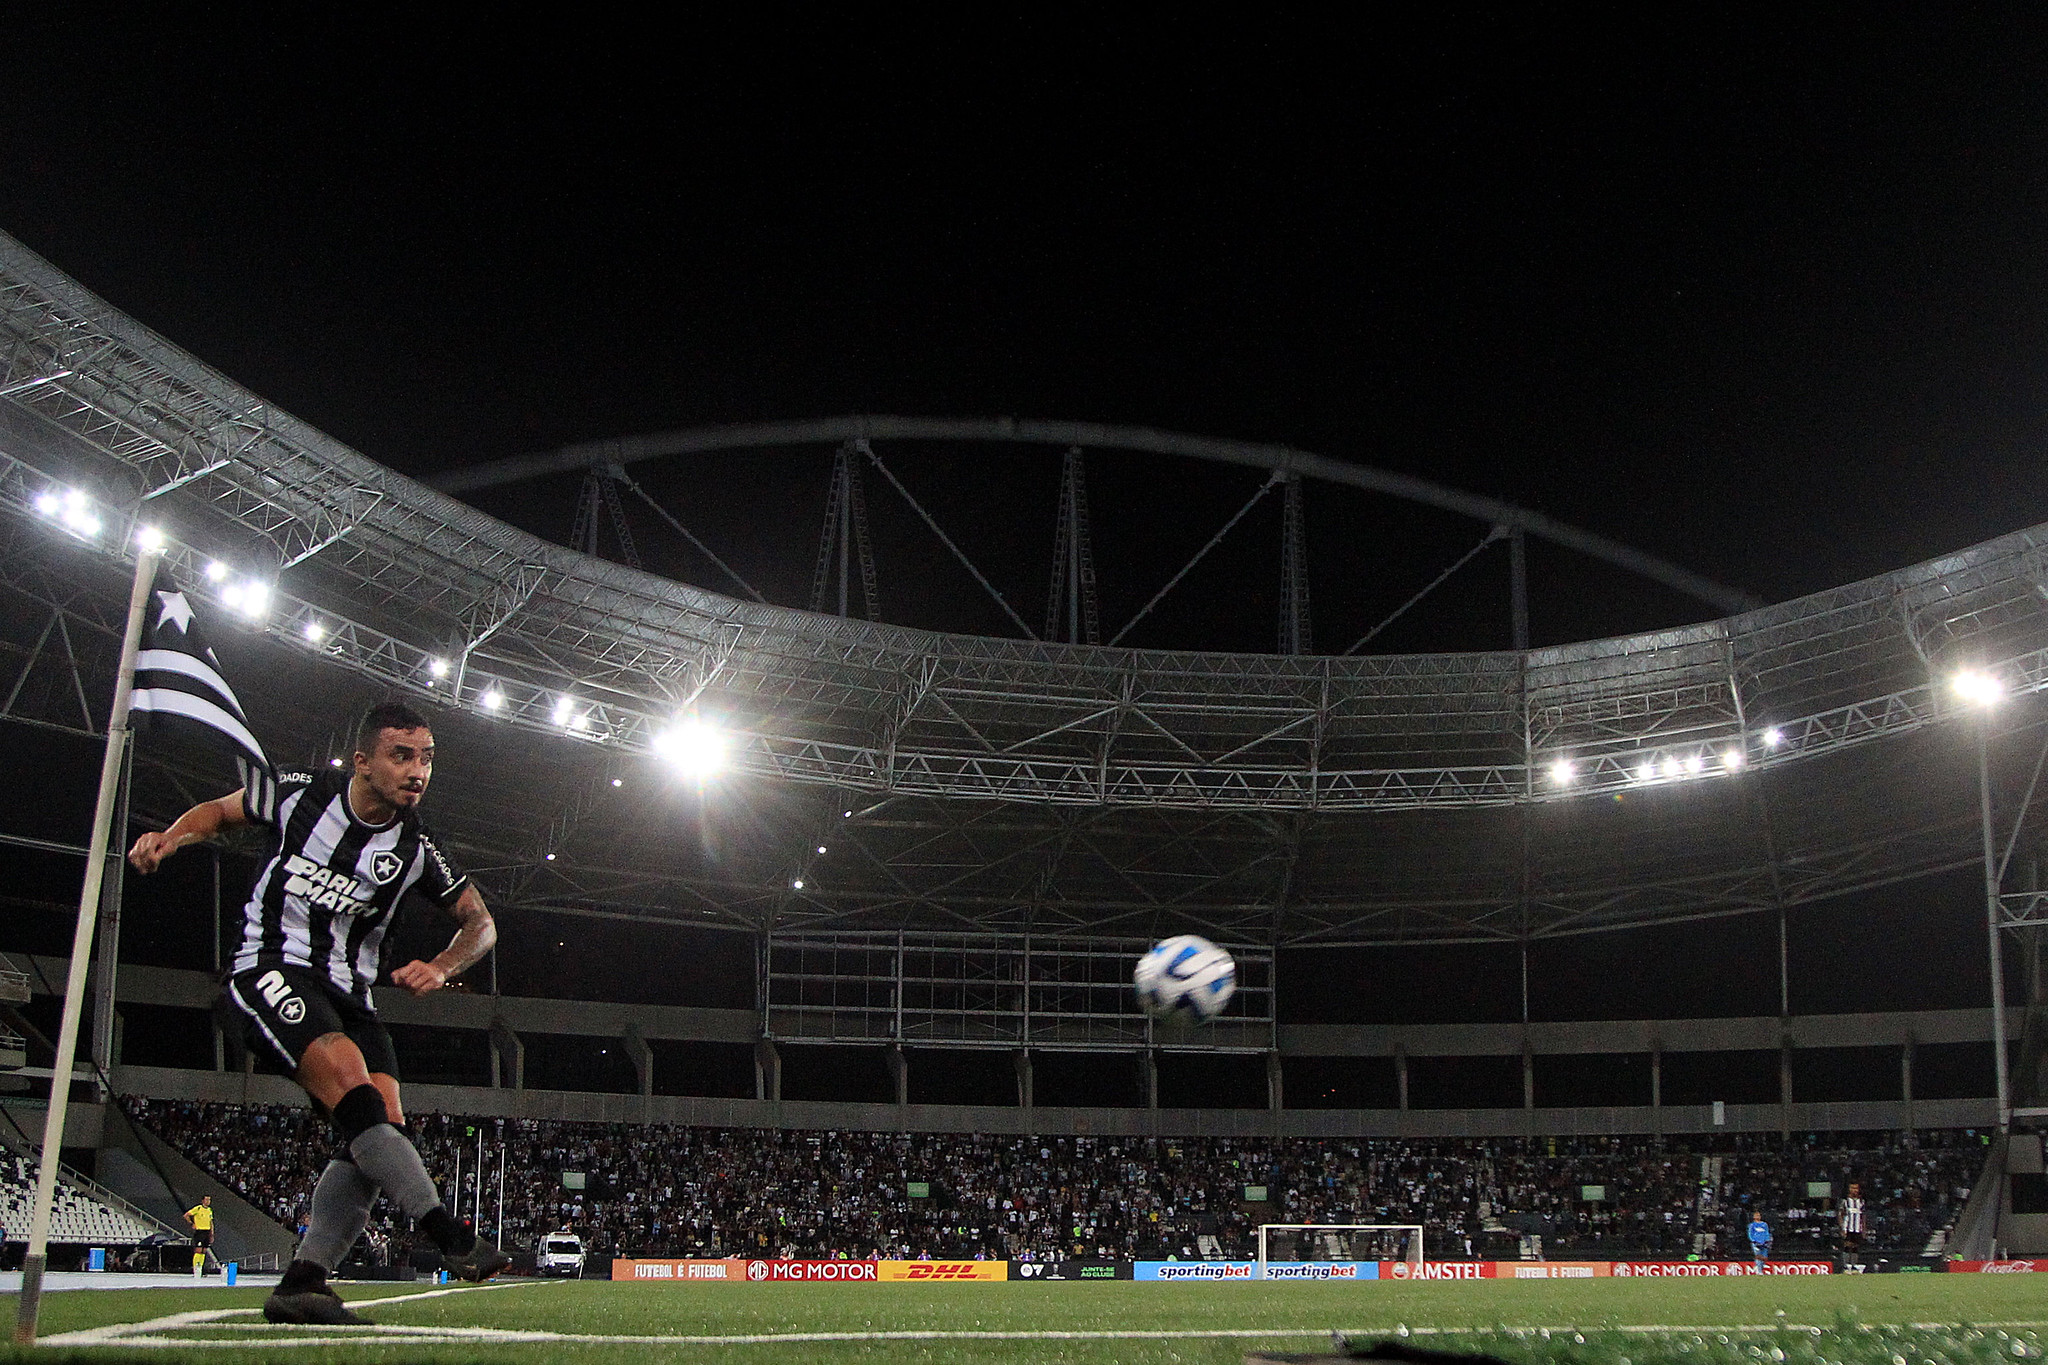 Rafael cobra escanteio contra o Magallanes. (Foto: Víctor Silva/Botafogo)